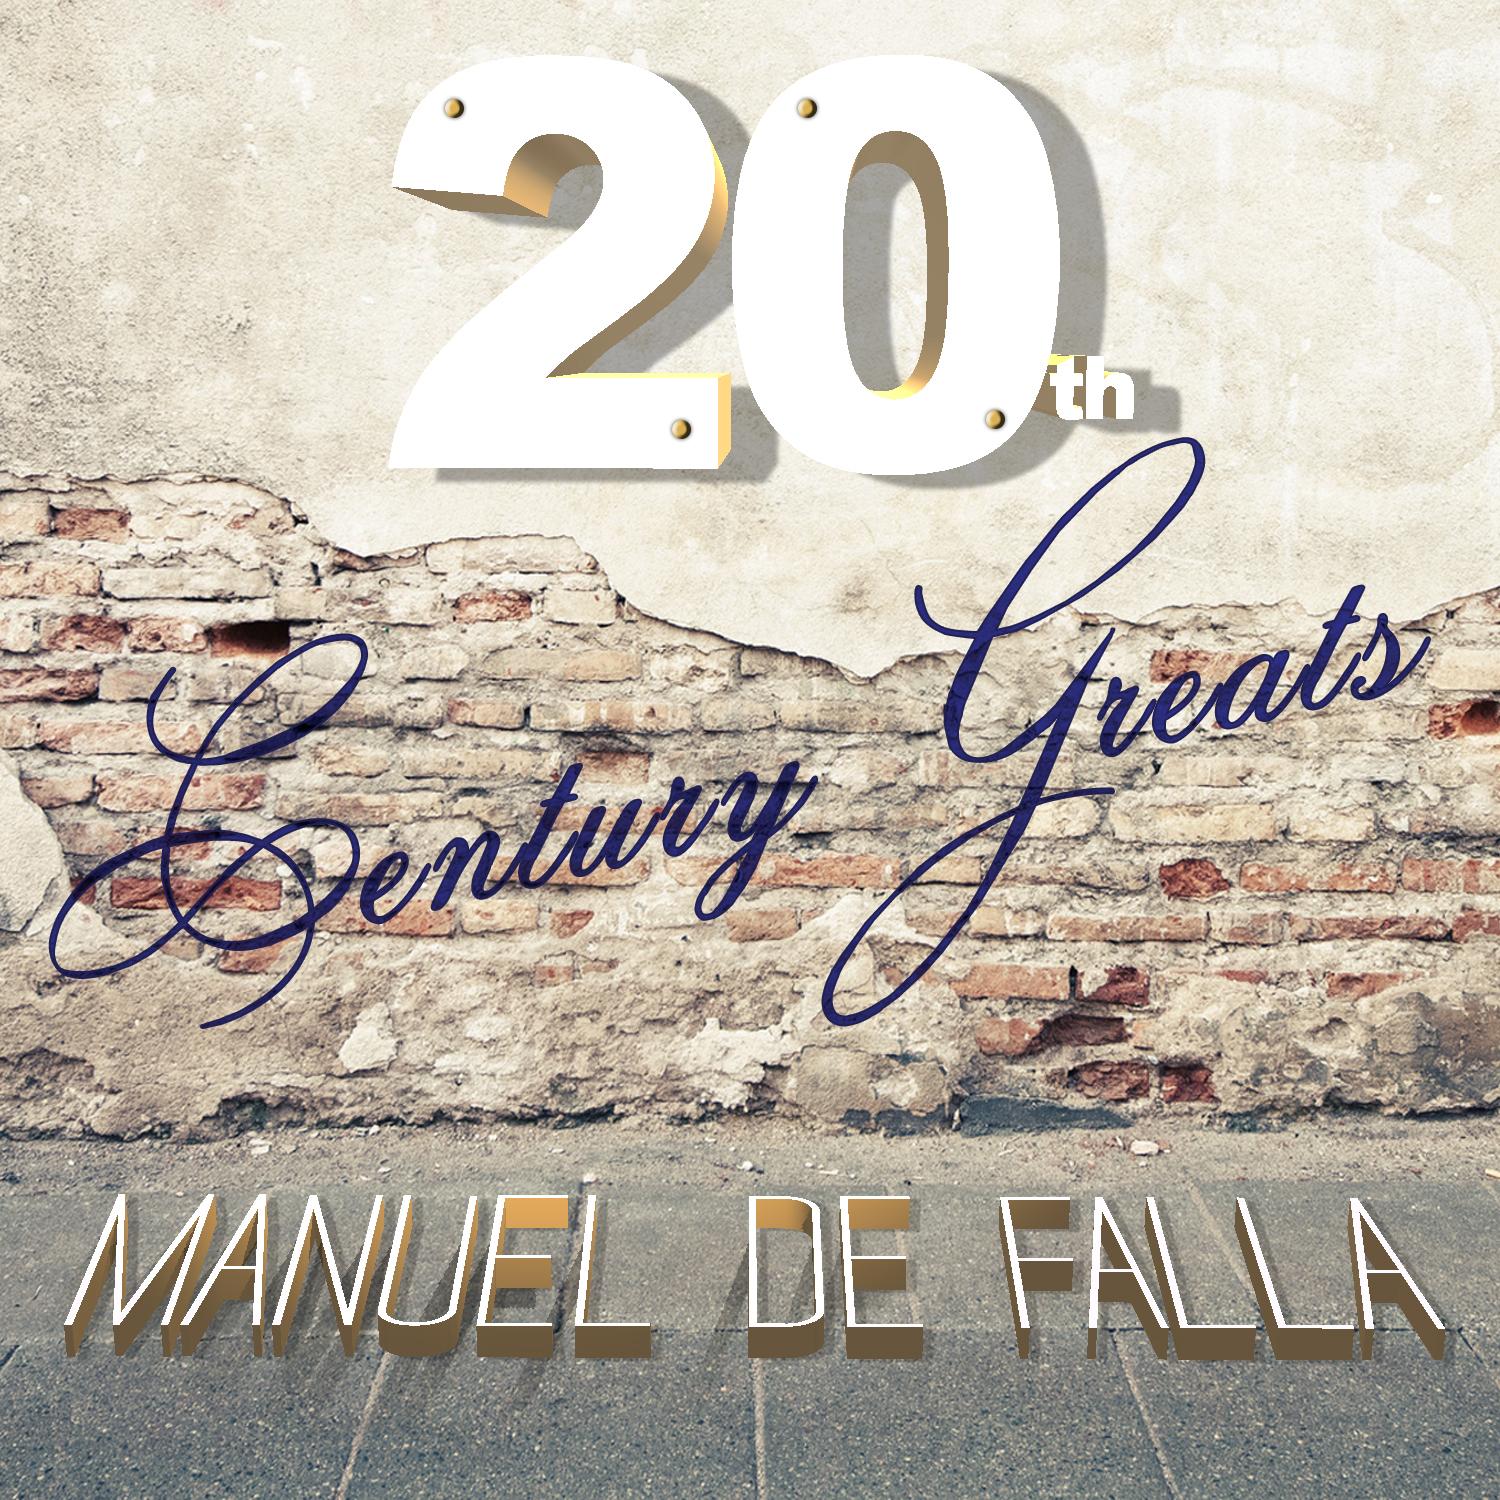 20th Century Greats: Manuel de Falla